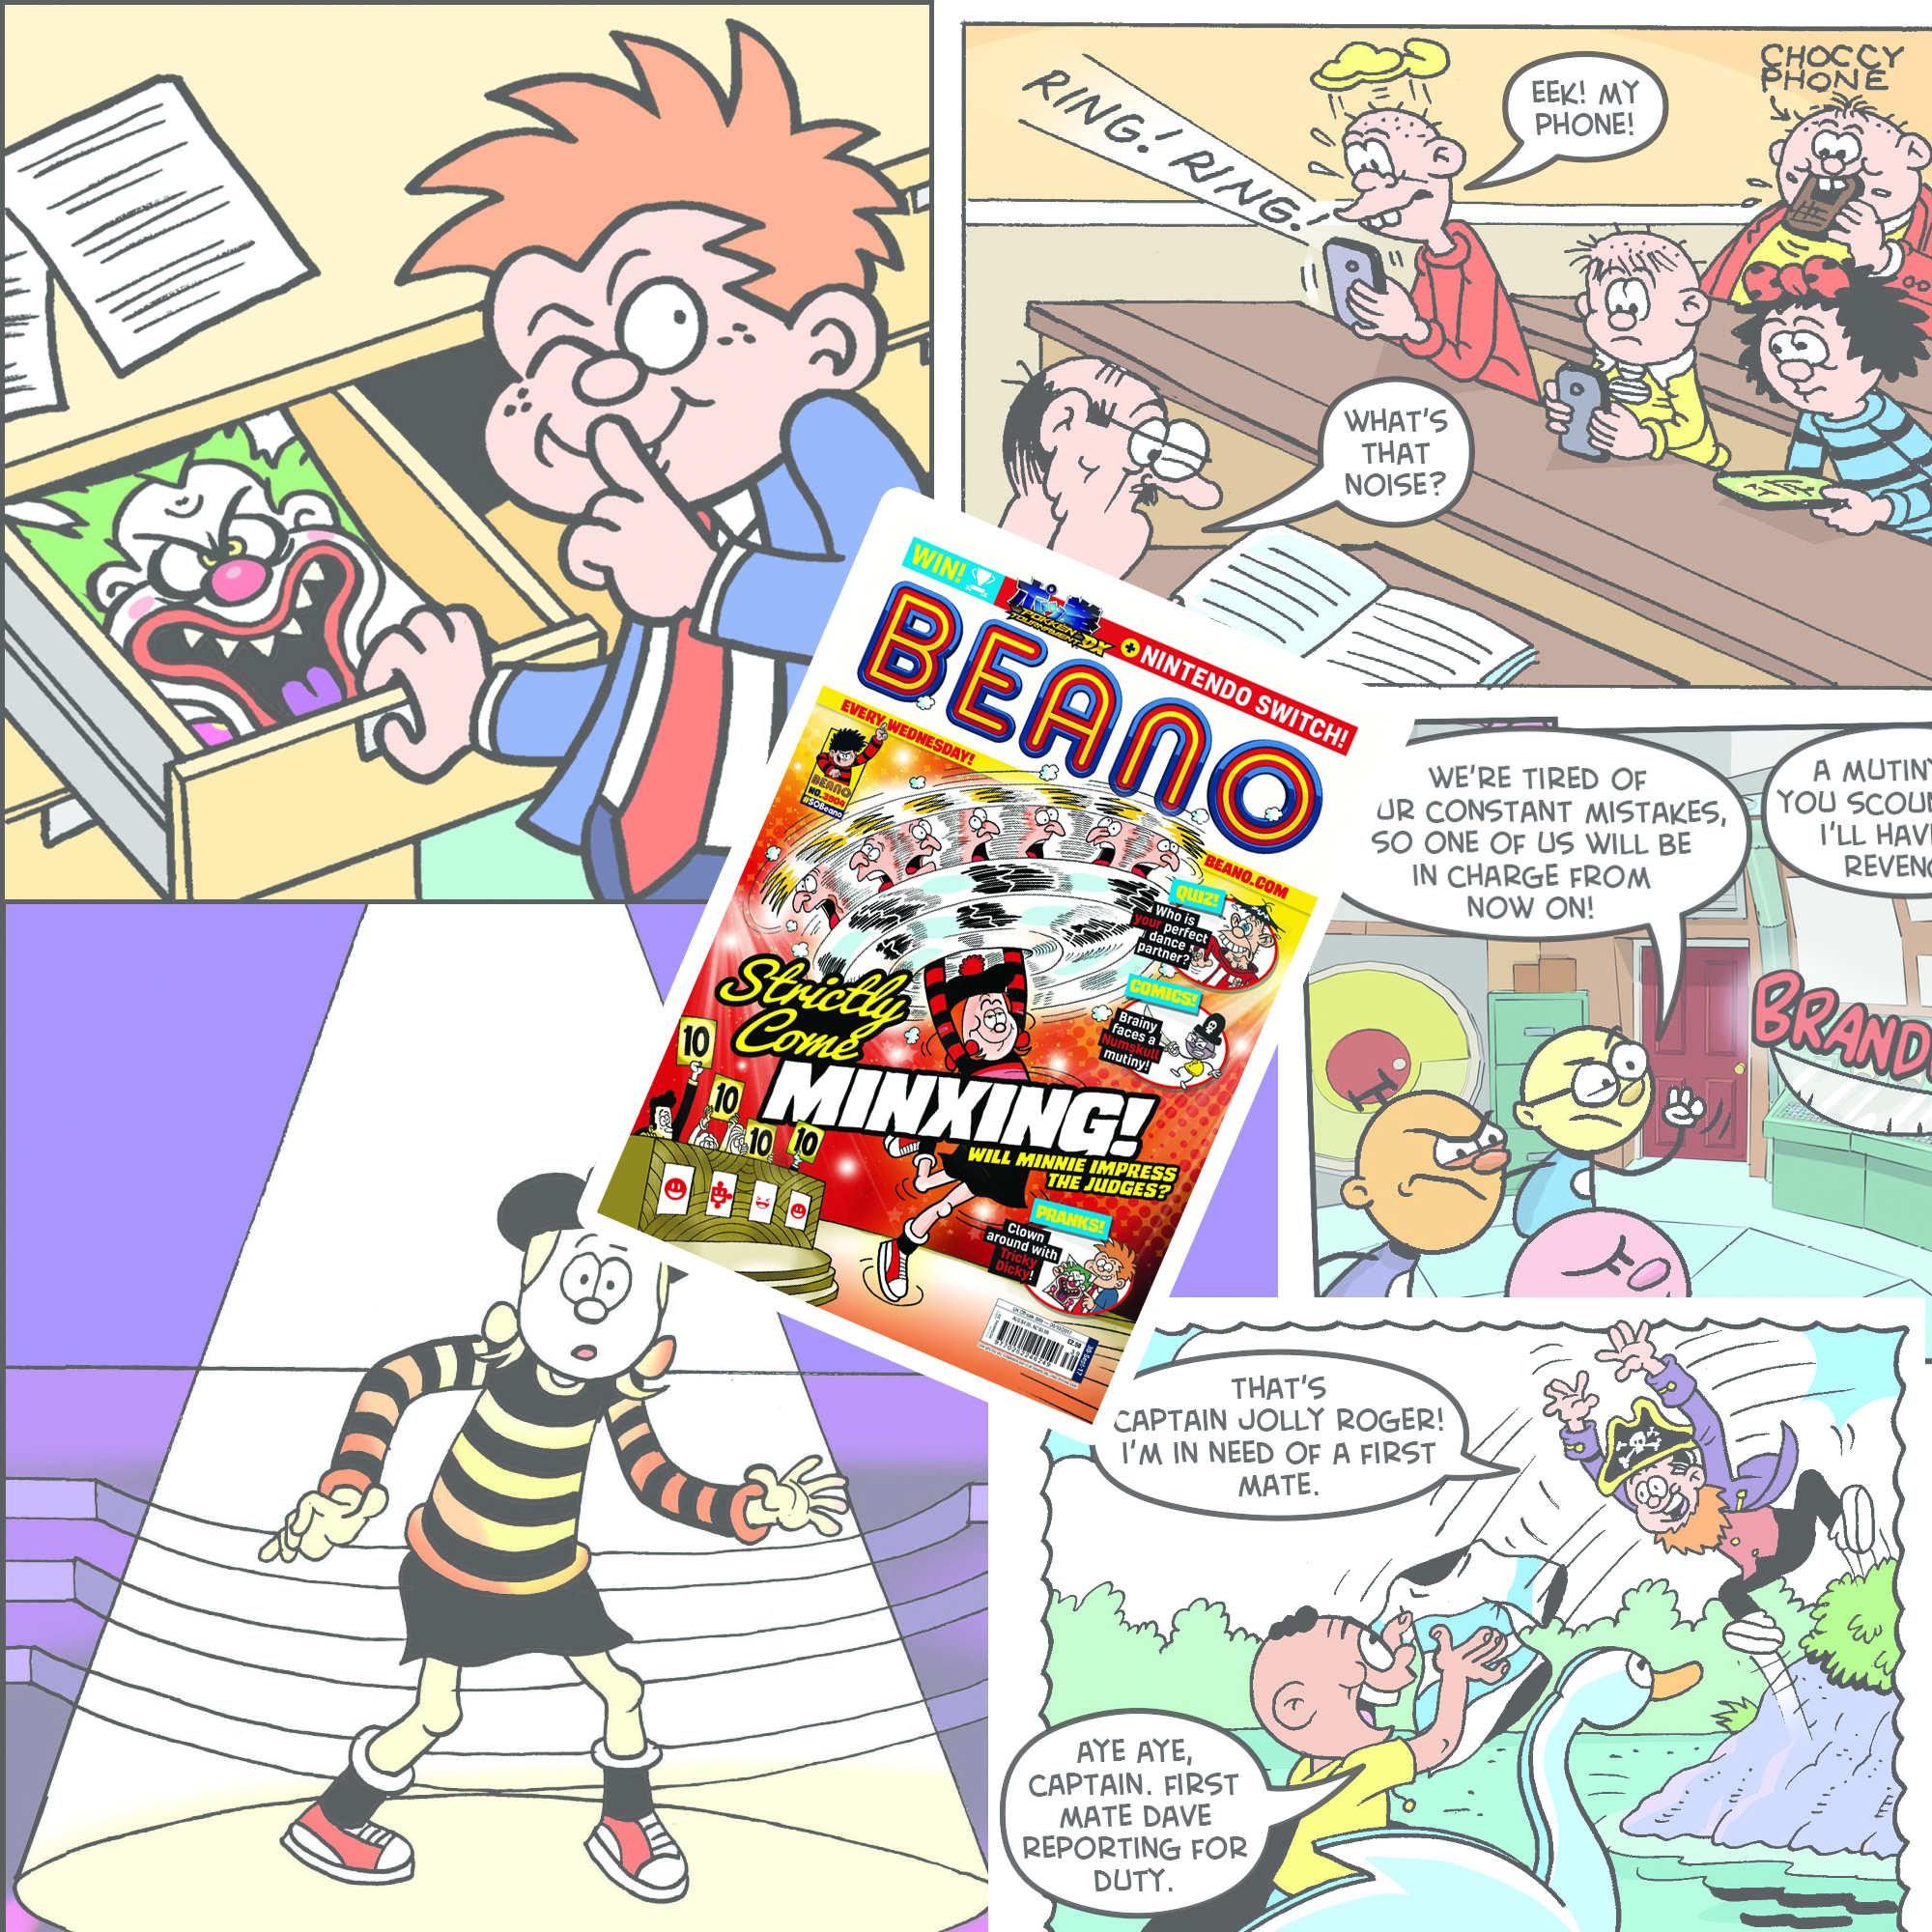 Beano No. 3904 - 30th September 2017